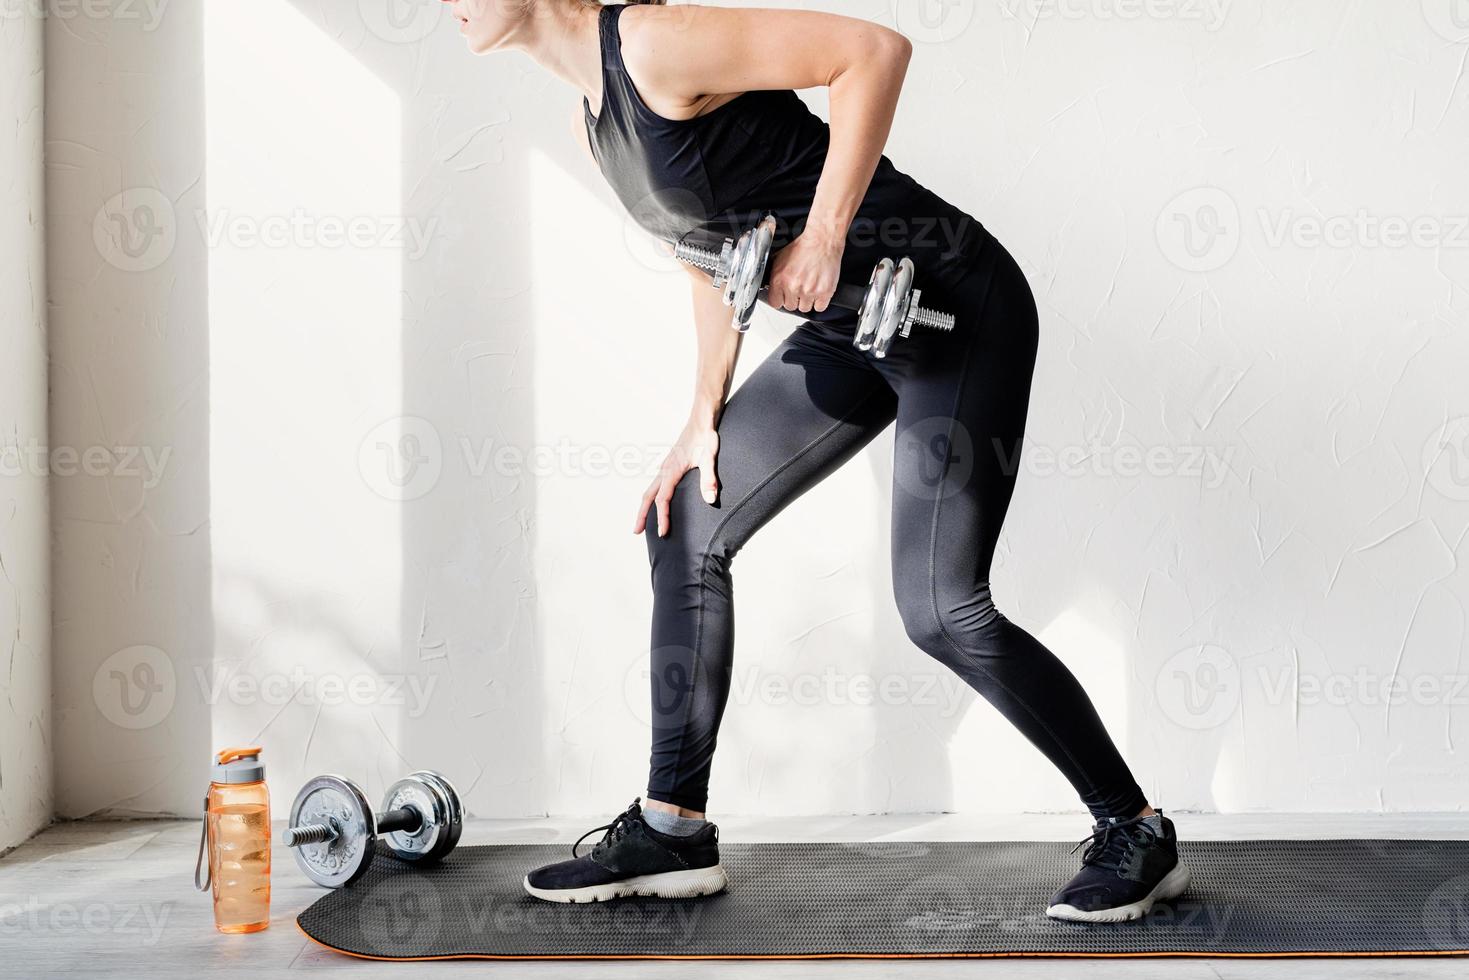 vrouw die aan het trainen is met dumbbell lifts traint haar rug en armen foto